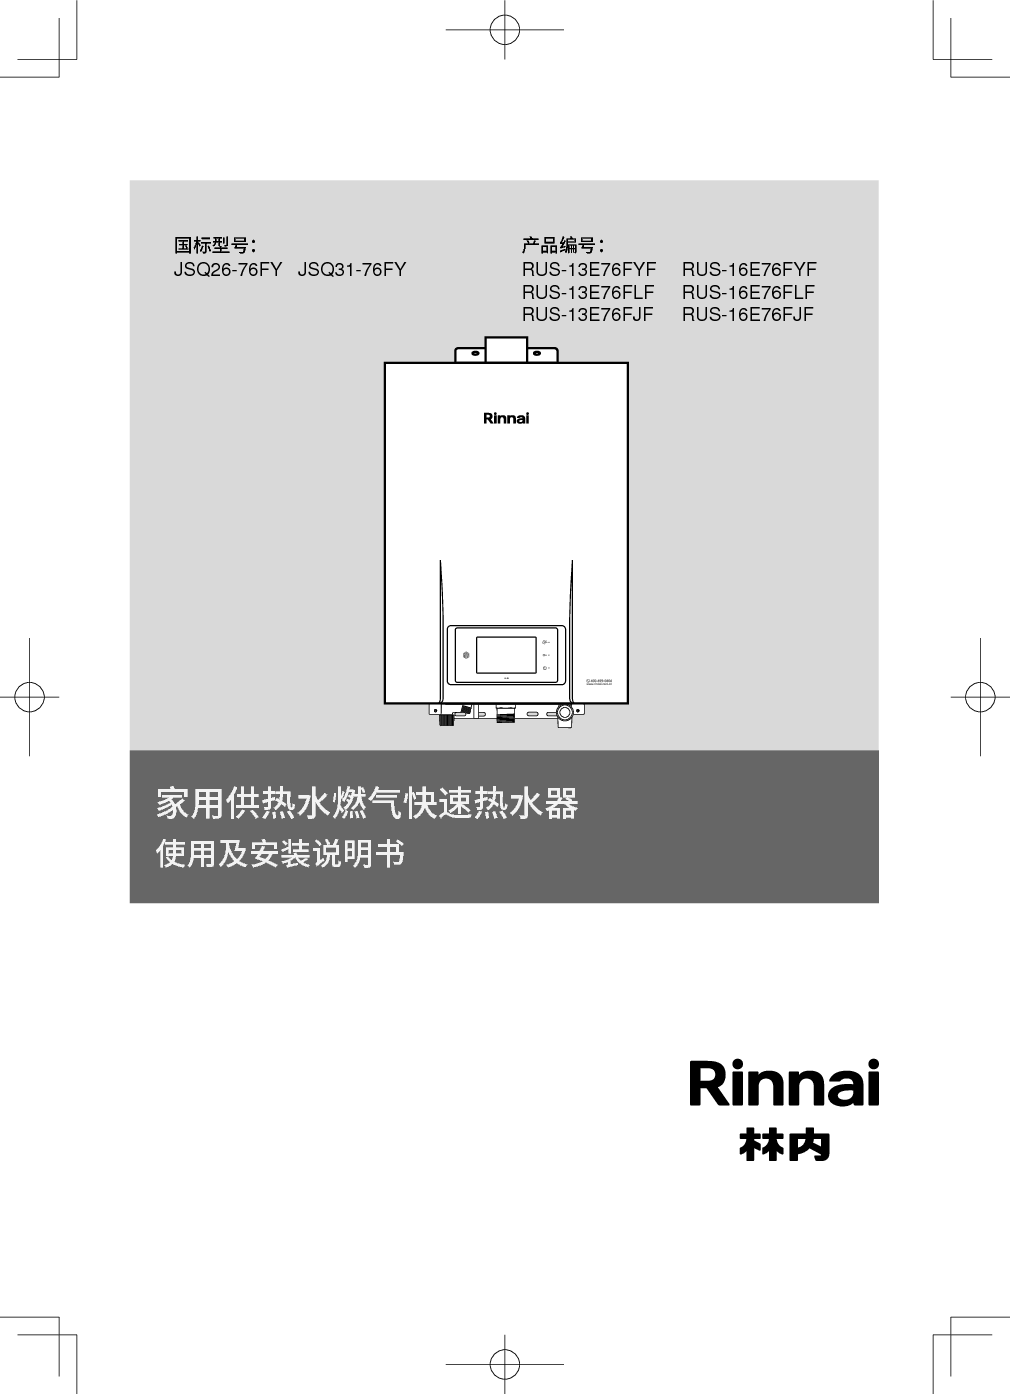 林内 Rinnai JSQ26-76FY, RUS-13E76FJF 使用说明书 封面